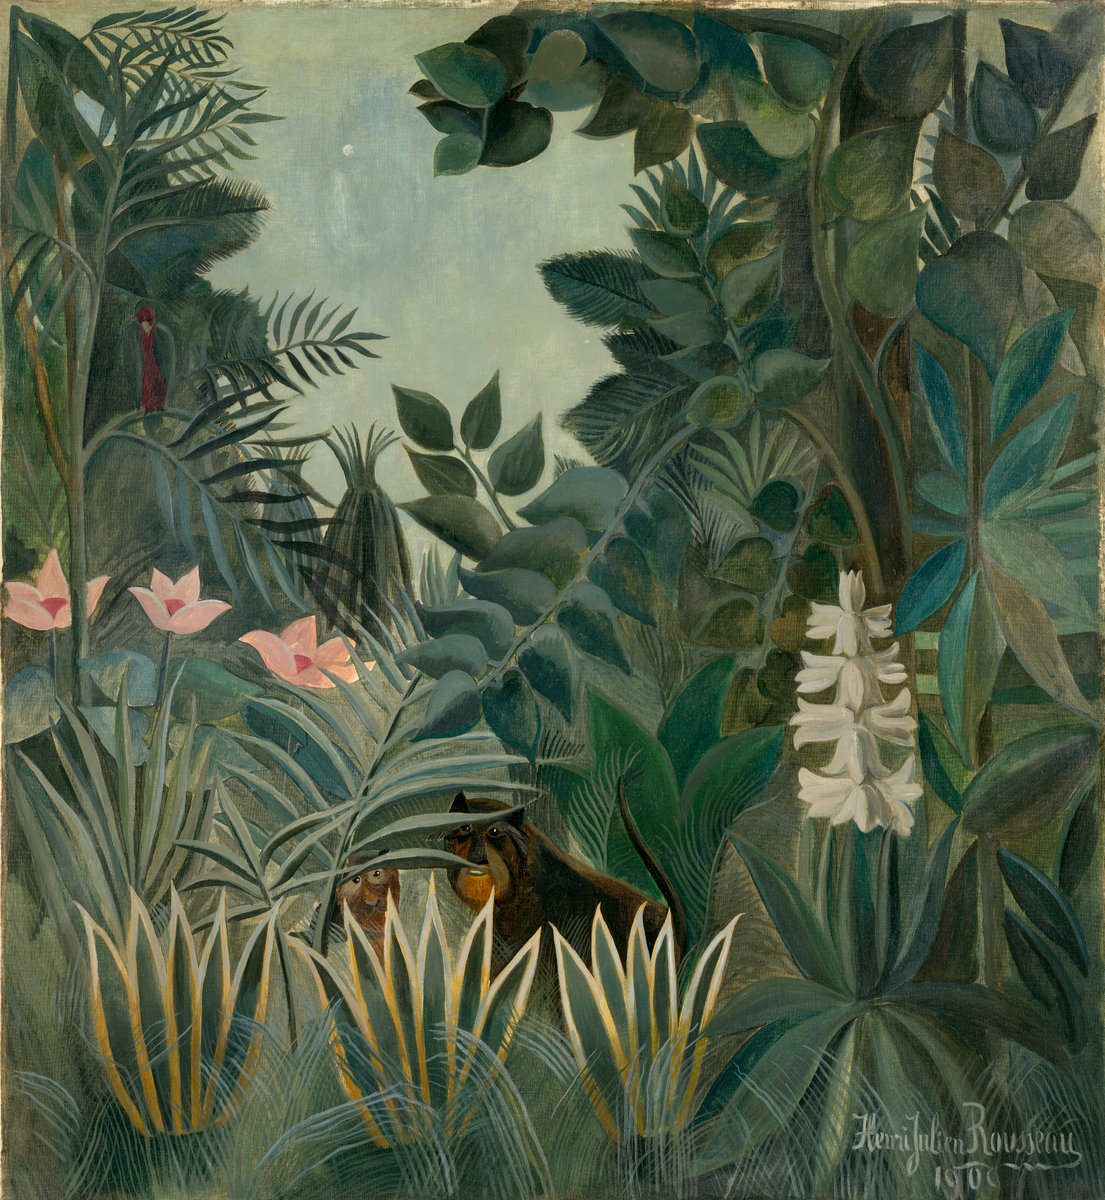 התאנה.. 17 -יער הגשם, אנרי רוסו, 1909. הגלרייה הלאומית לאומנות, וושינגטון. אוסף דייל צ'סטר.